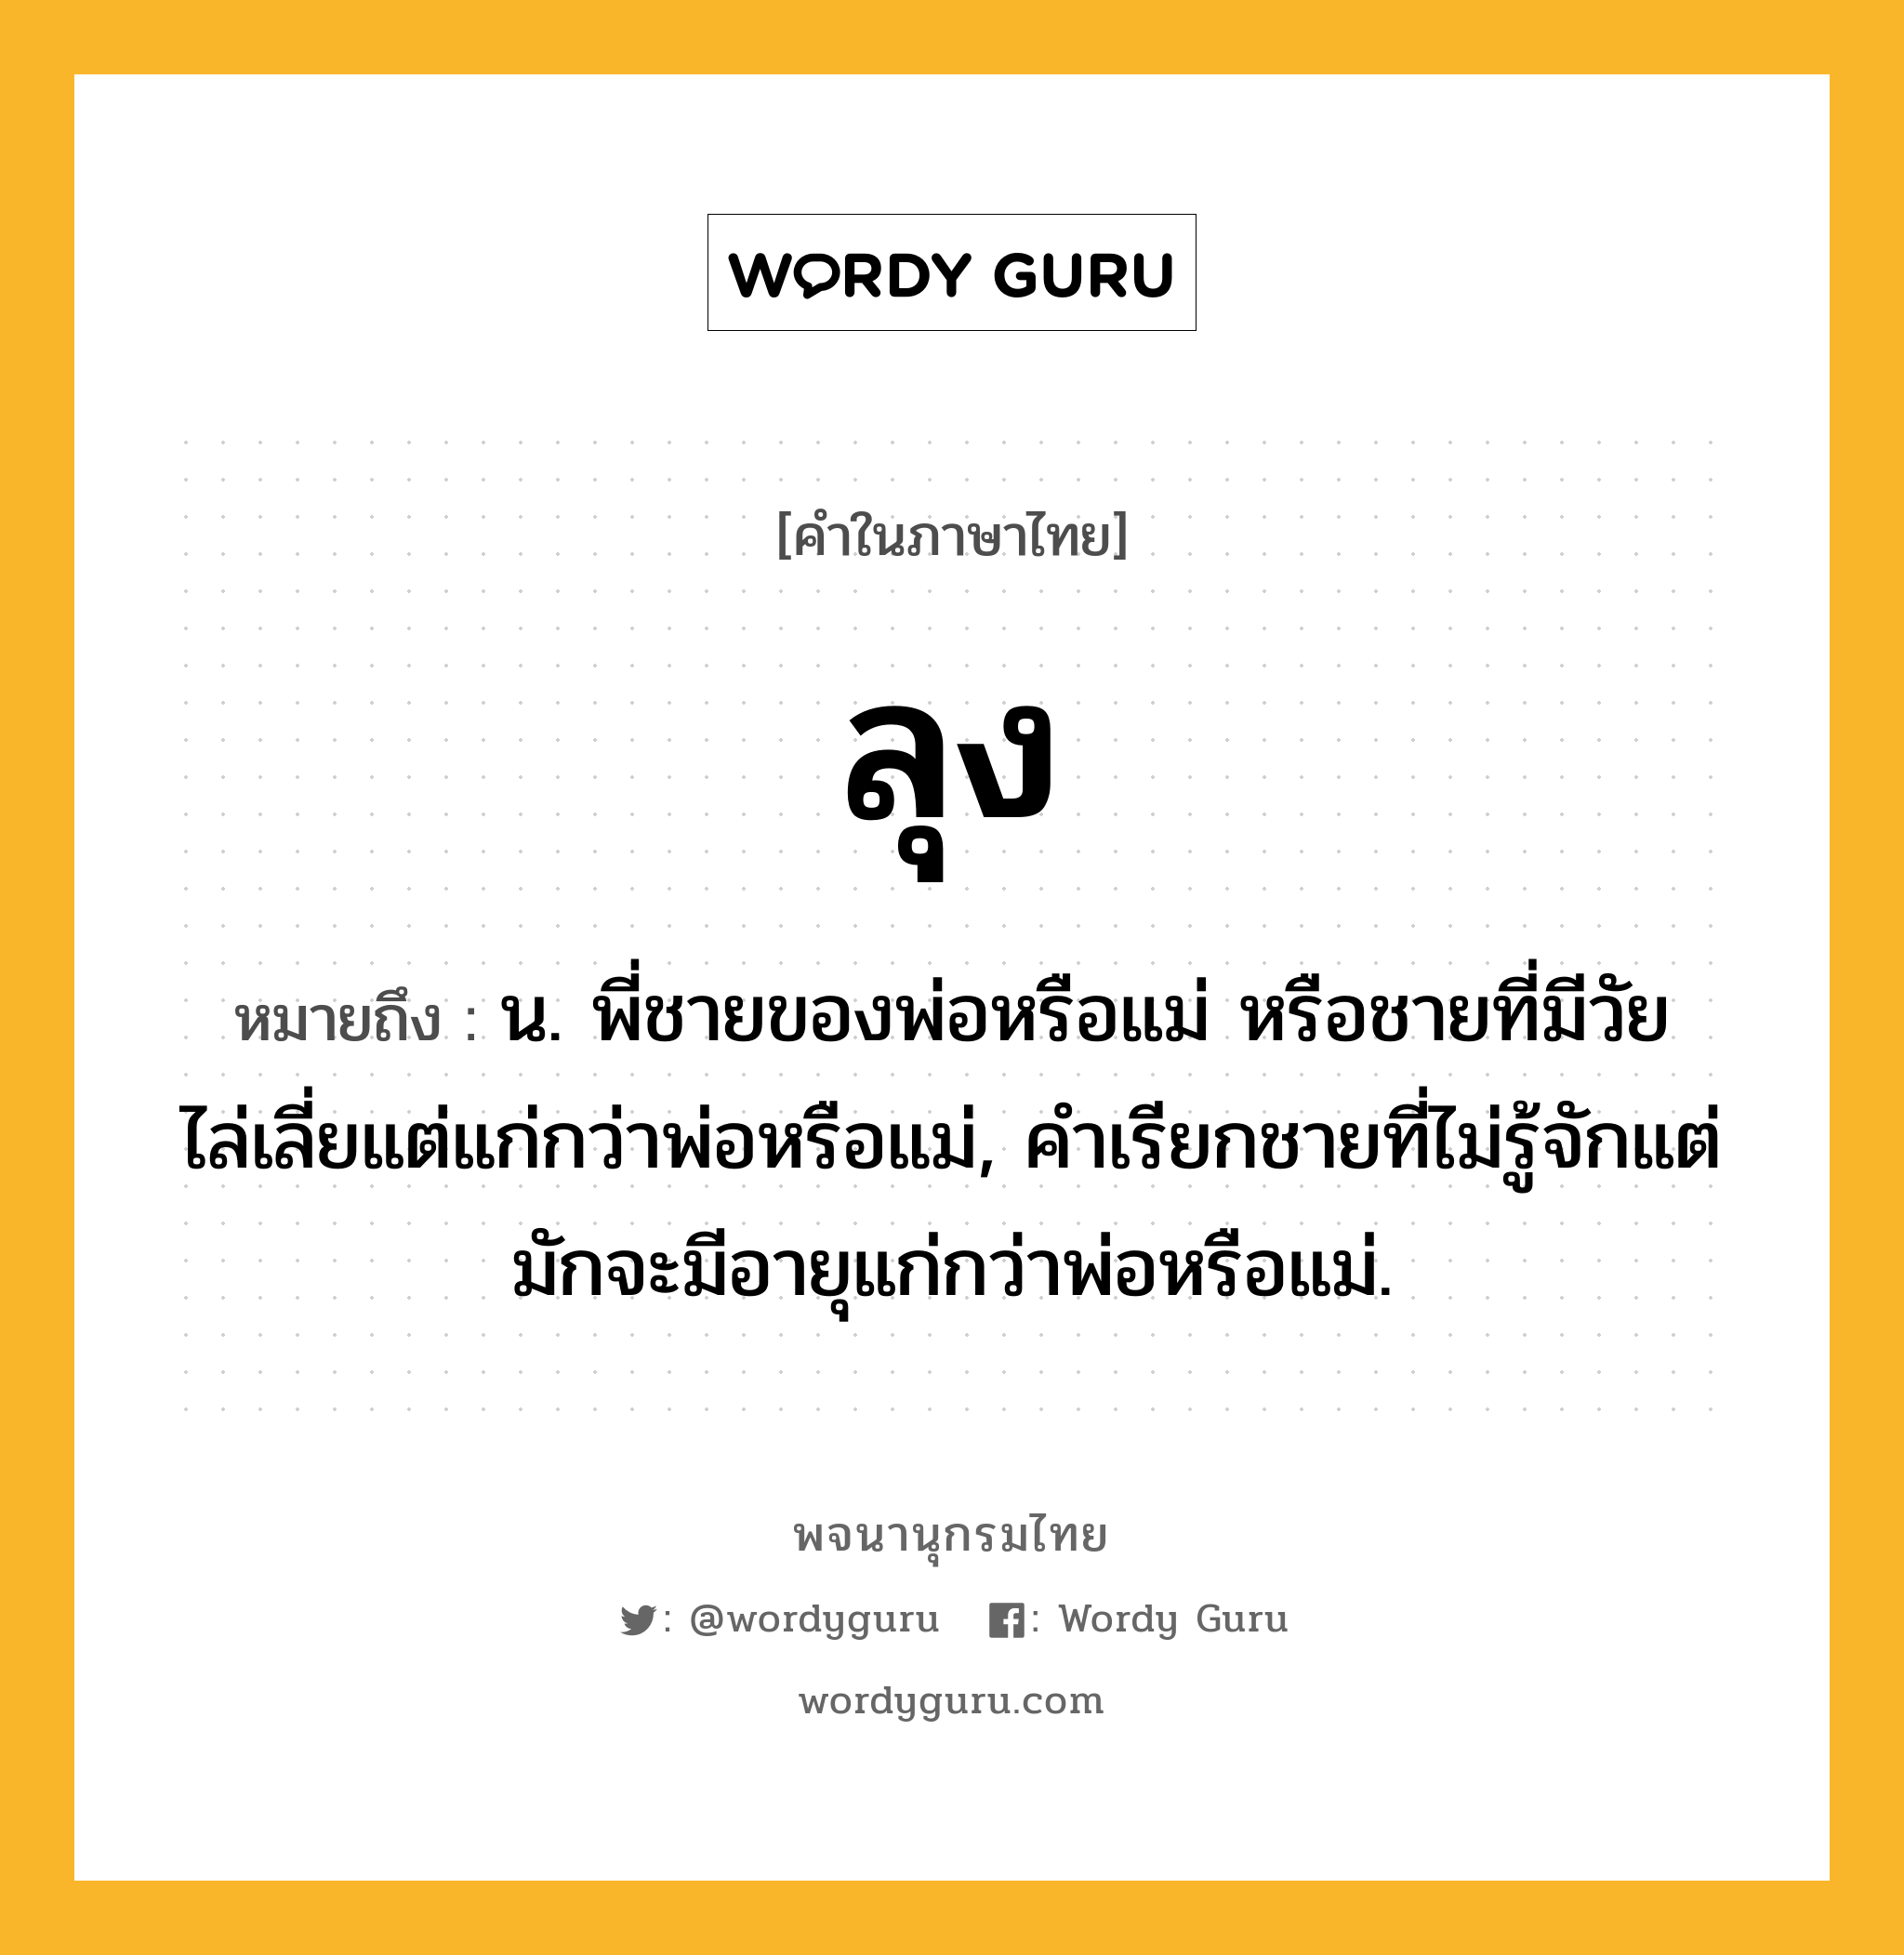 ลุง ความหมาย หมายถึงอะไร?, คำในภาษาไทย ลุง หมายถึง น. พี่ชายของพ่อหรือแม่ หรือชายที่มีวัยไล่เลี่ยแต่แก่กว่าพ่อหรือแม่, คําเรียกชายที่ไม่รู้จักแต่มักจะมีอายุแก่กว่าพ่อหรือแม่.